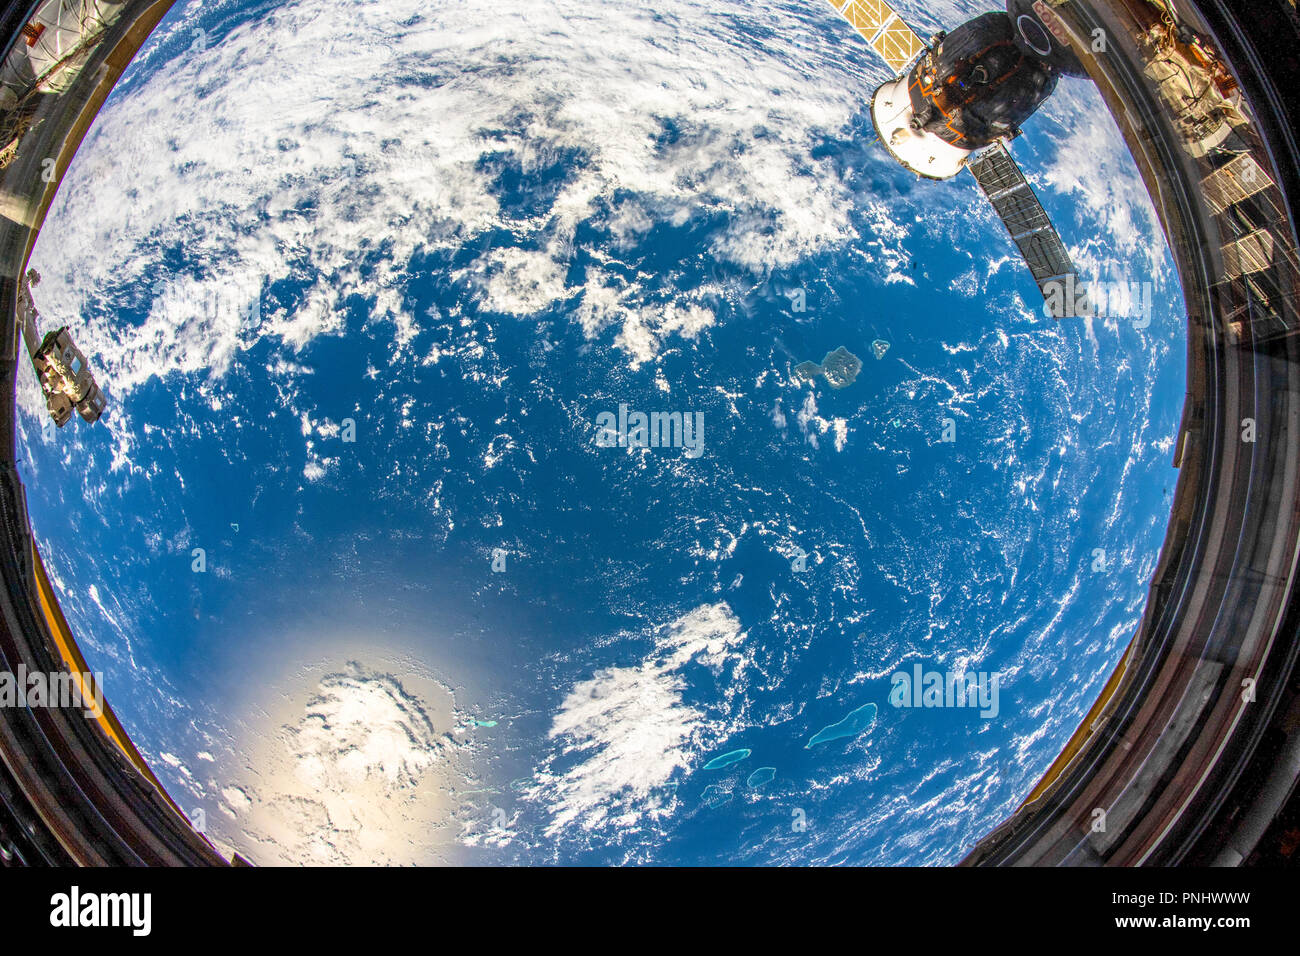 Hermoso planeta Tierra vista desde el espacio. Contraste de color azul y amarillo en la superficie. Esta imagen es un panfleto de la NASA Foto de stock